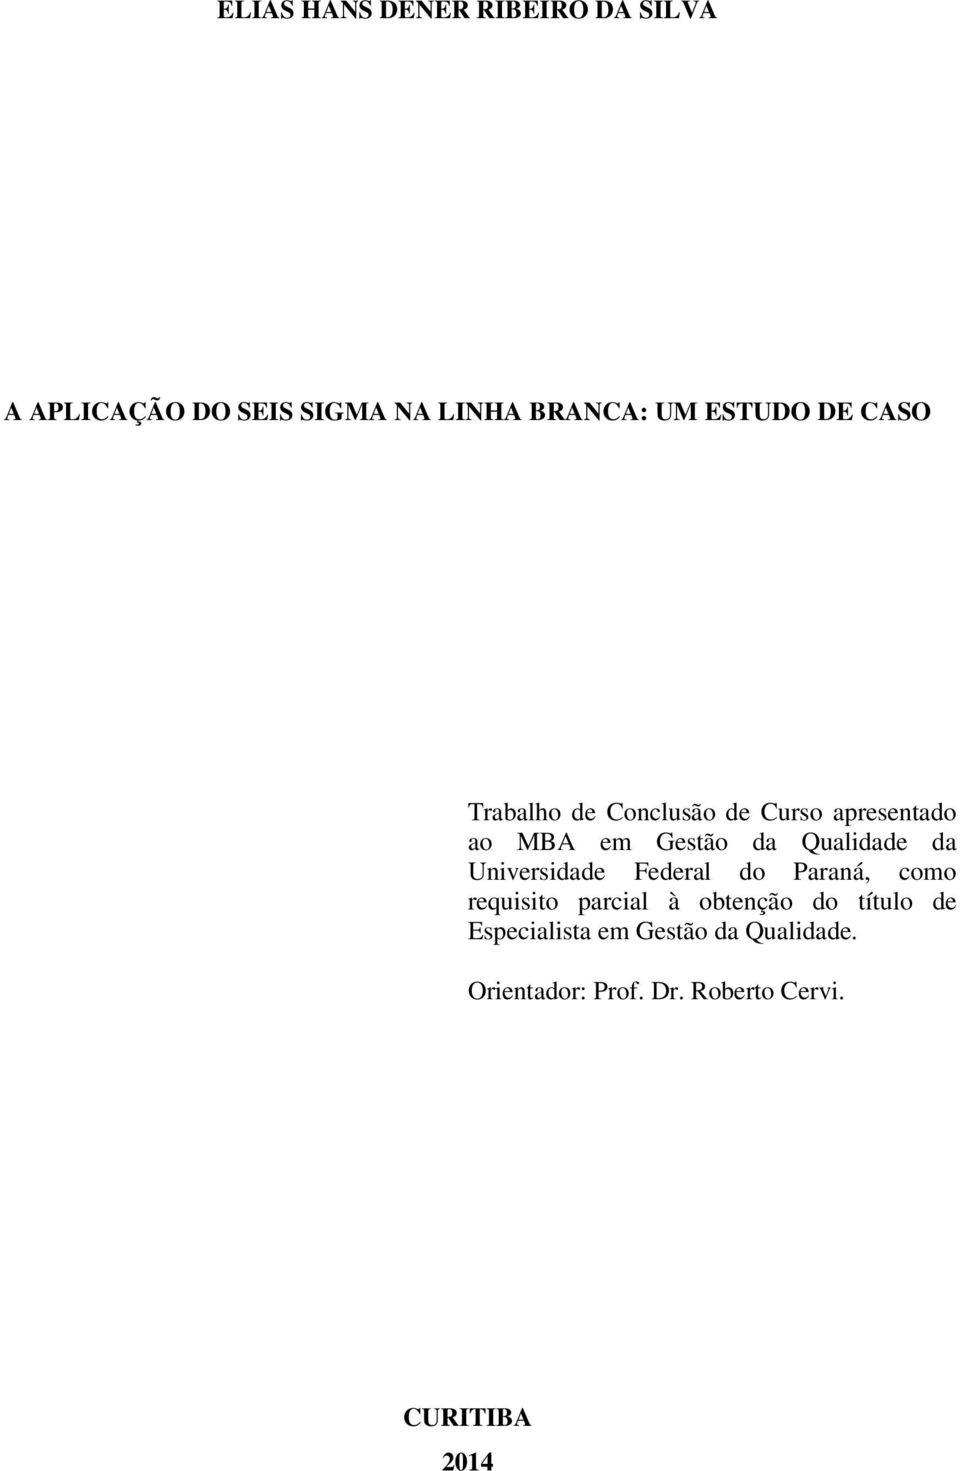 Qualidade da Universidade Federal do Paraná, como requisito parcial à obtenção do